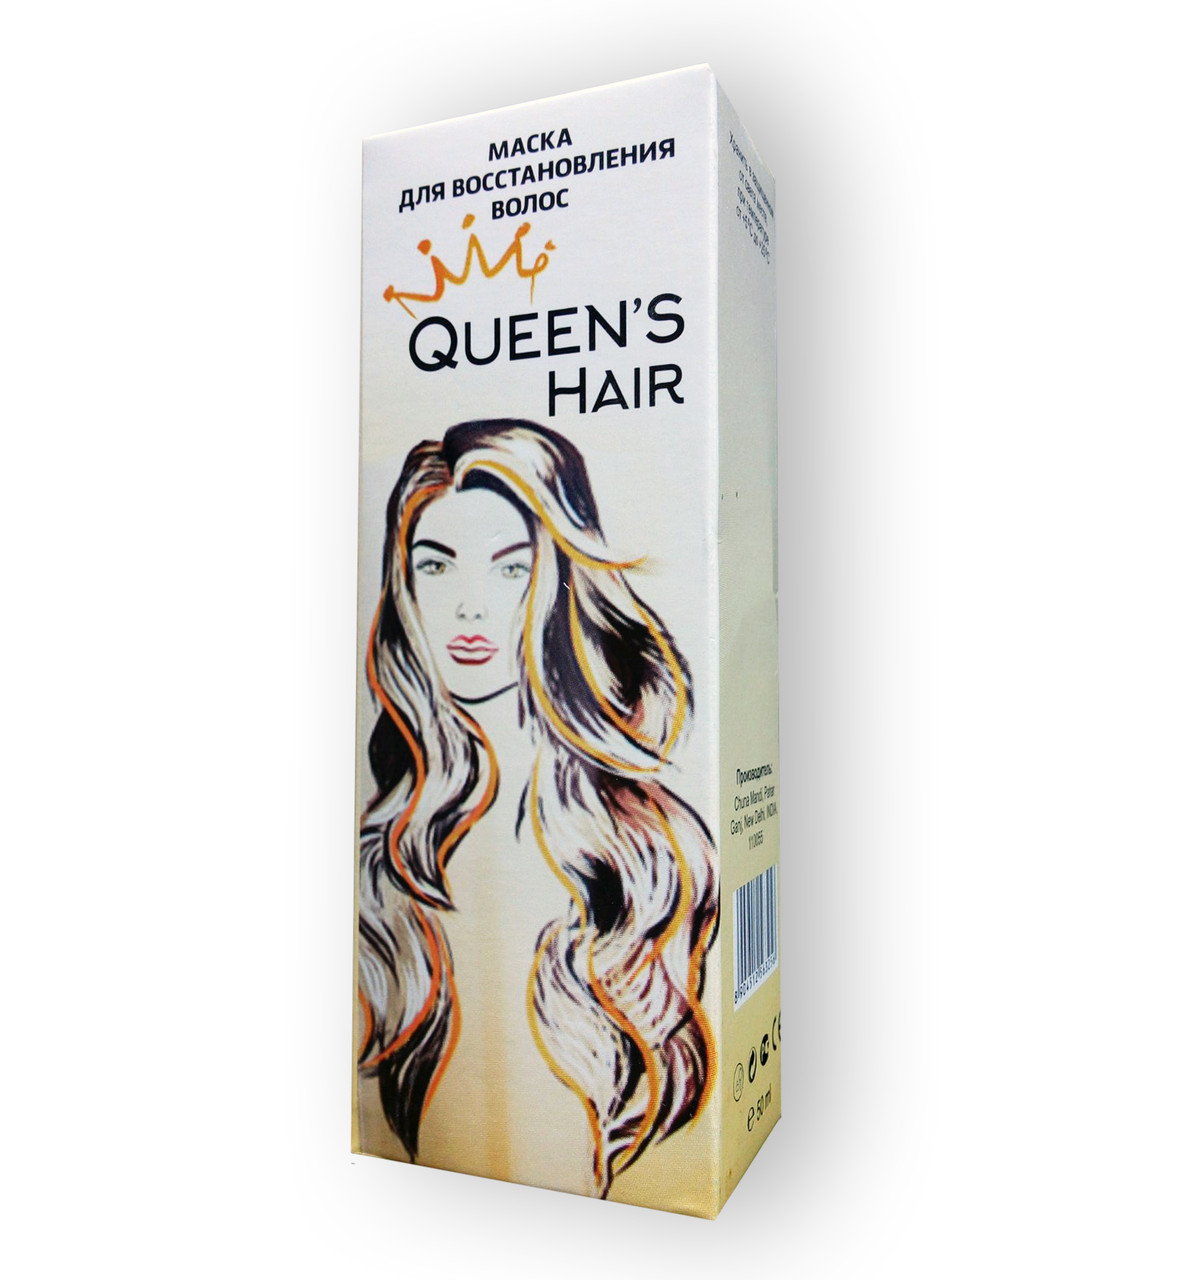 Queen’s hair - Маска для відновлення волосся (Квінс Хаір)